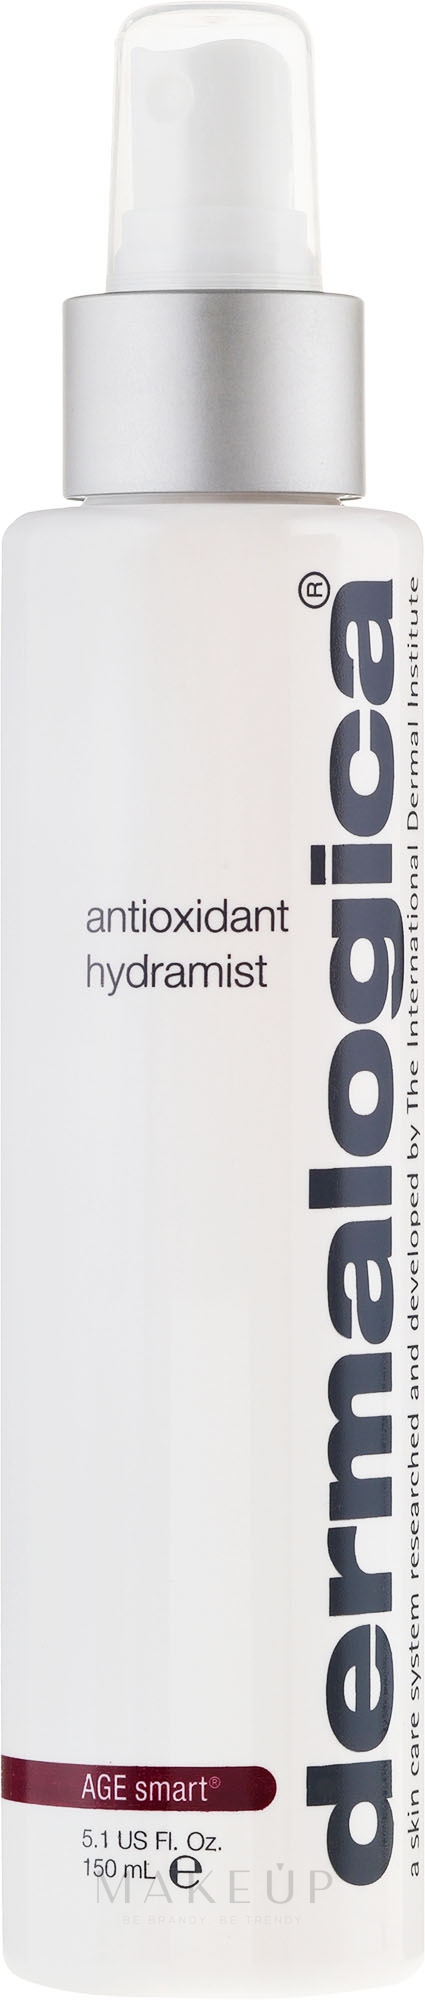 Erfrischender und antioxidativer Toner - Dermalogica Age Smart Antioxidant Hydramist — Foto 30 ml